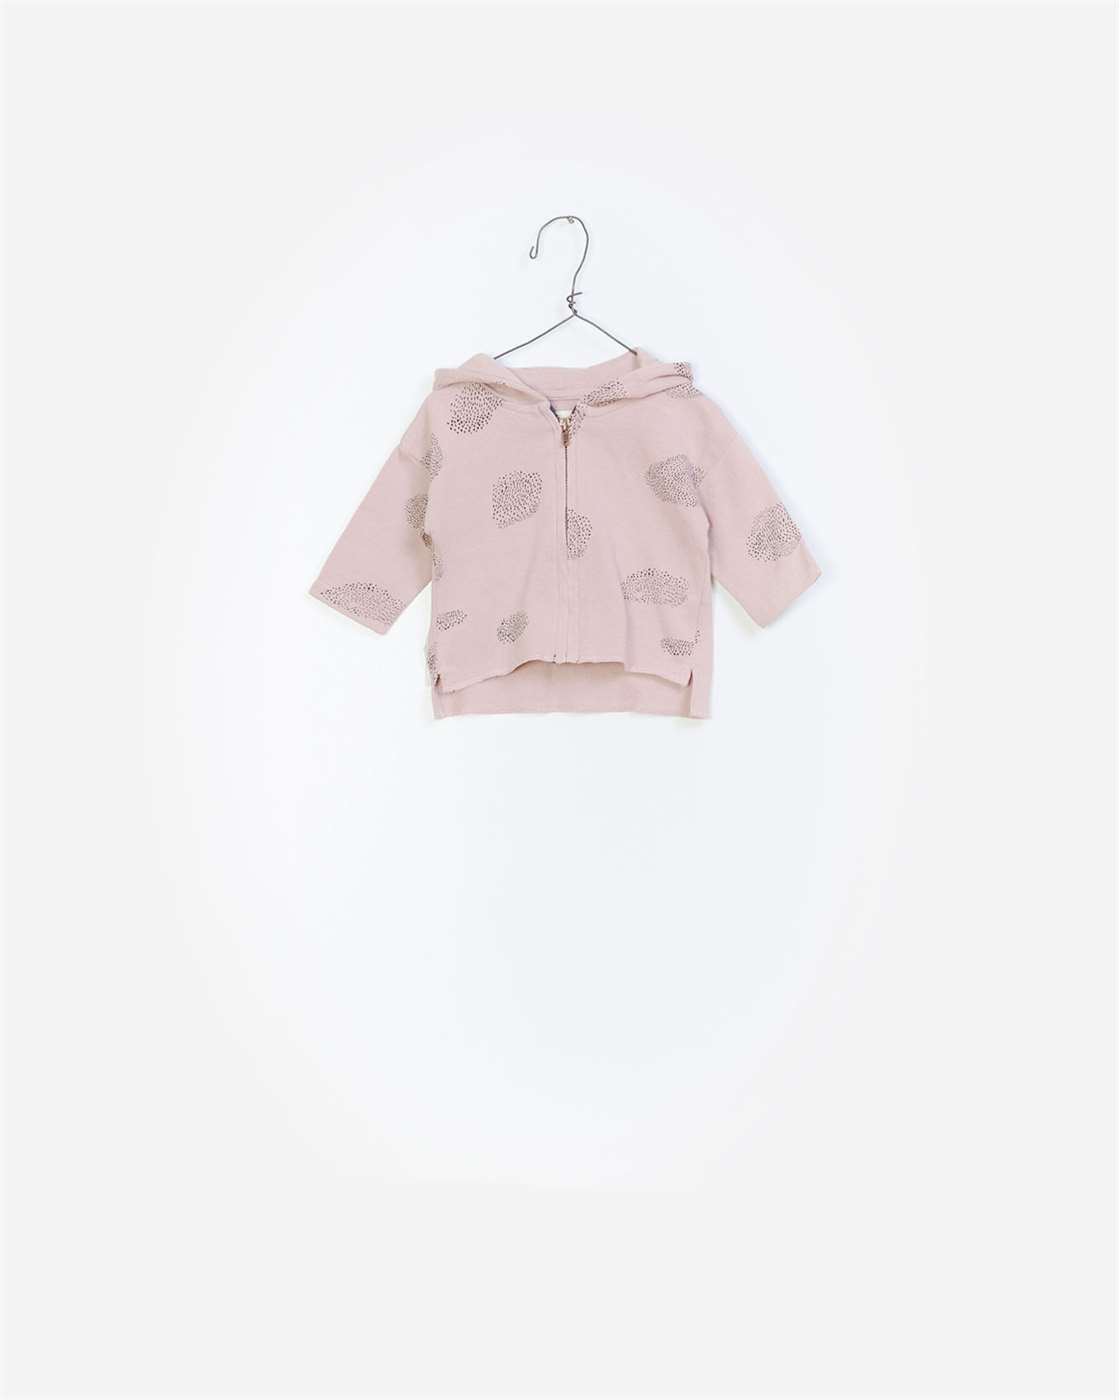 BeeBoo|BeeBoo PlayUp vêtement bébé baby cloth veste jacket felpa coton bio organic cotton rose pink